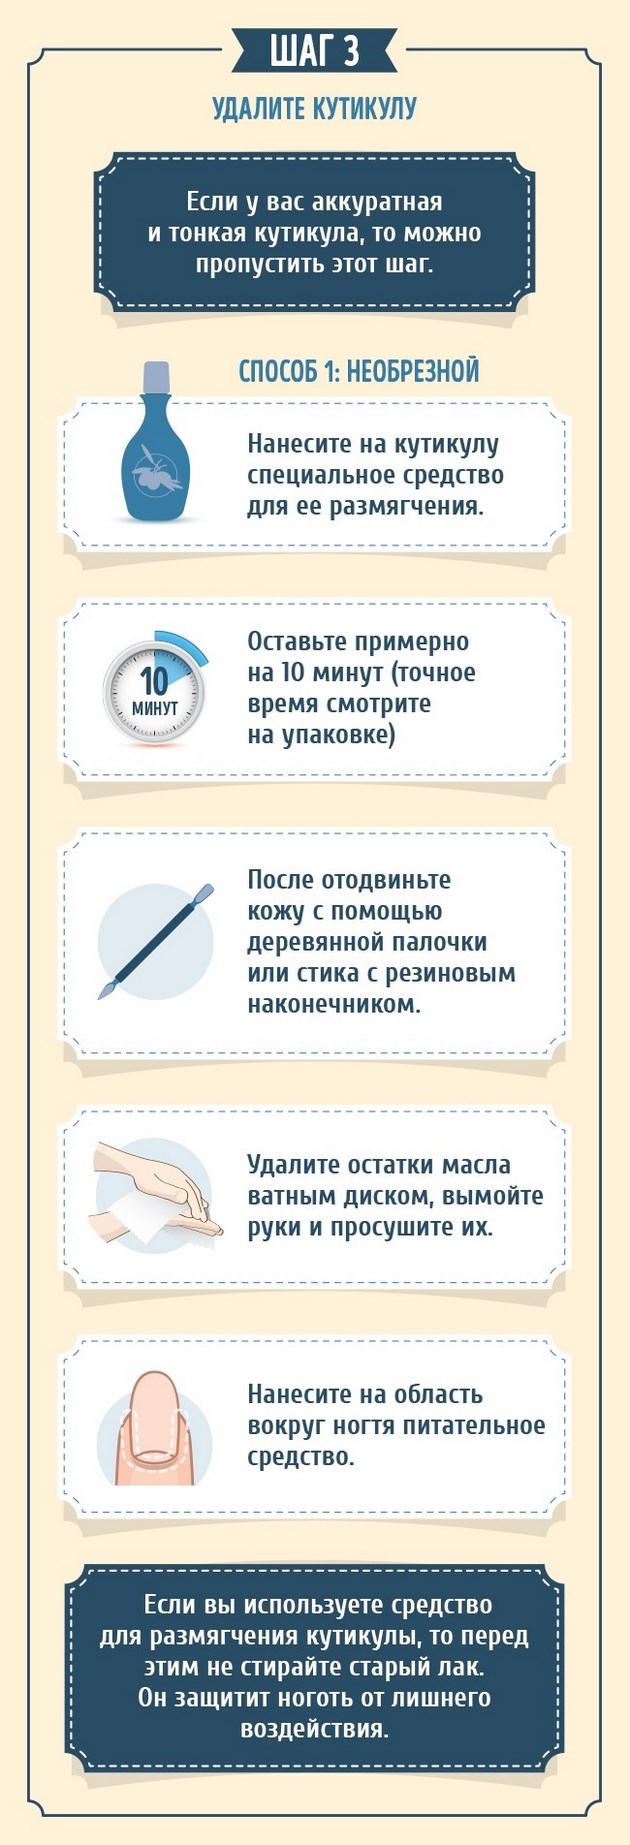 Instruktsiya, kako ispraviti manikyur pravilno (9)